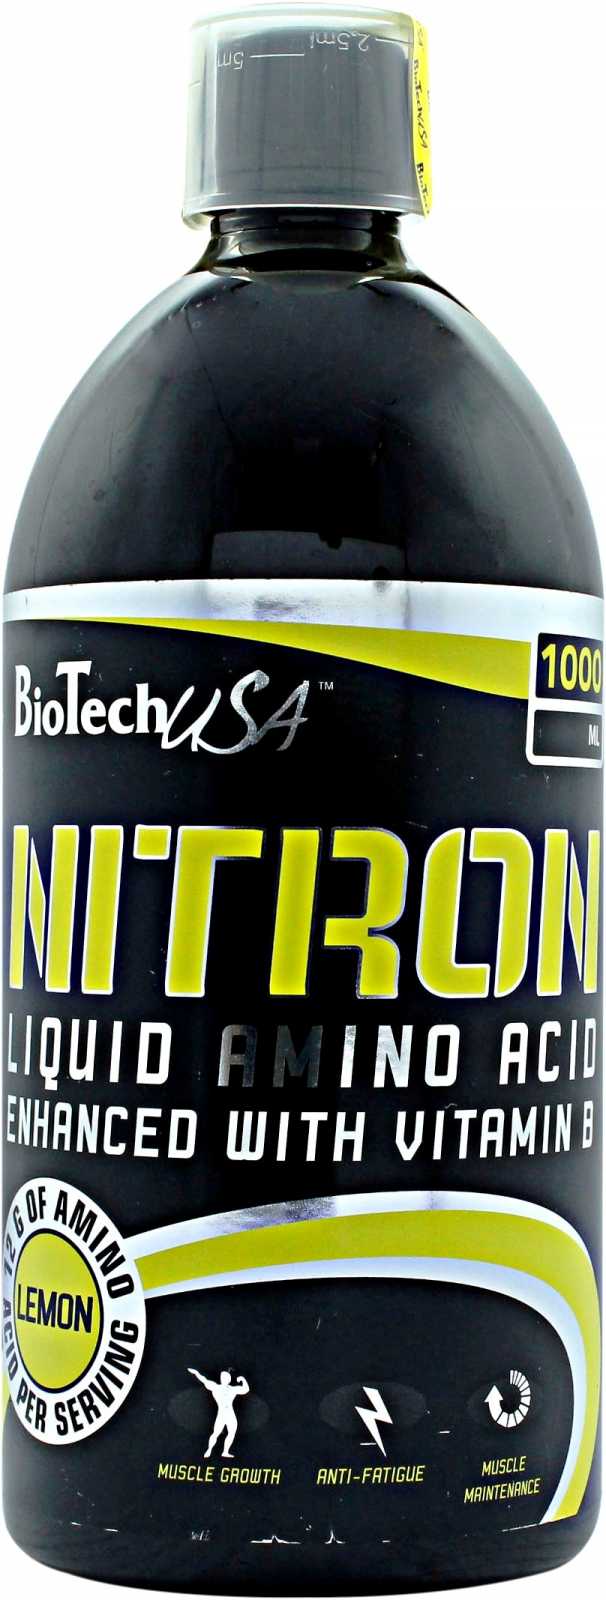 Nitron, 1000 g, BioTech. Complejo de aminoácidos. 